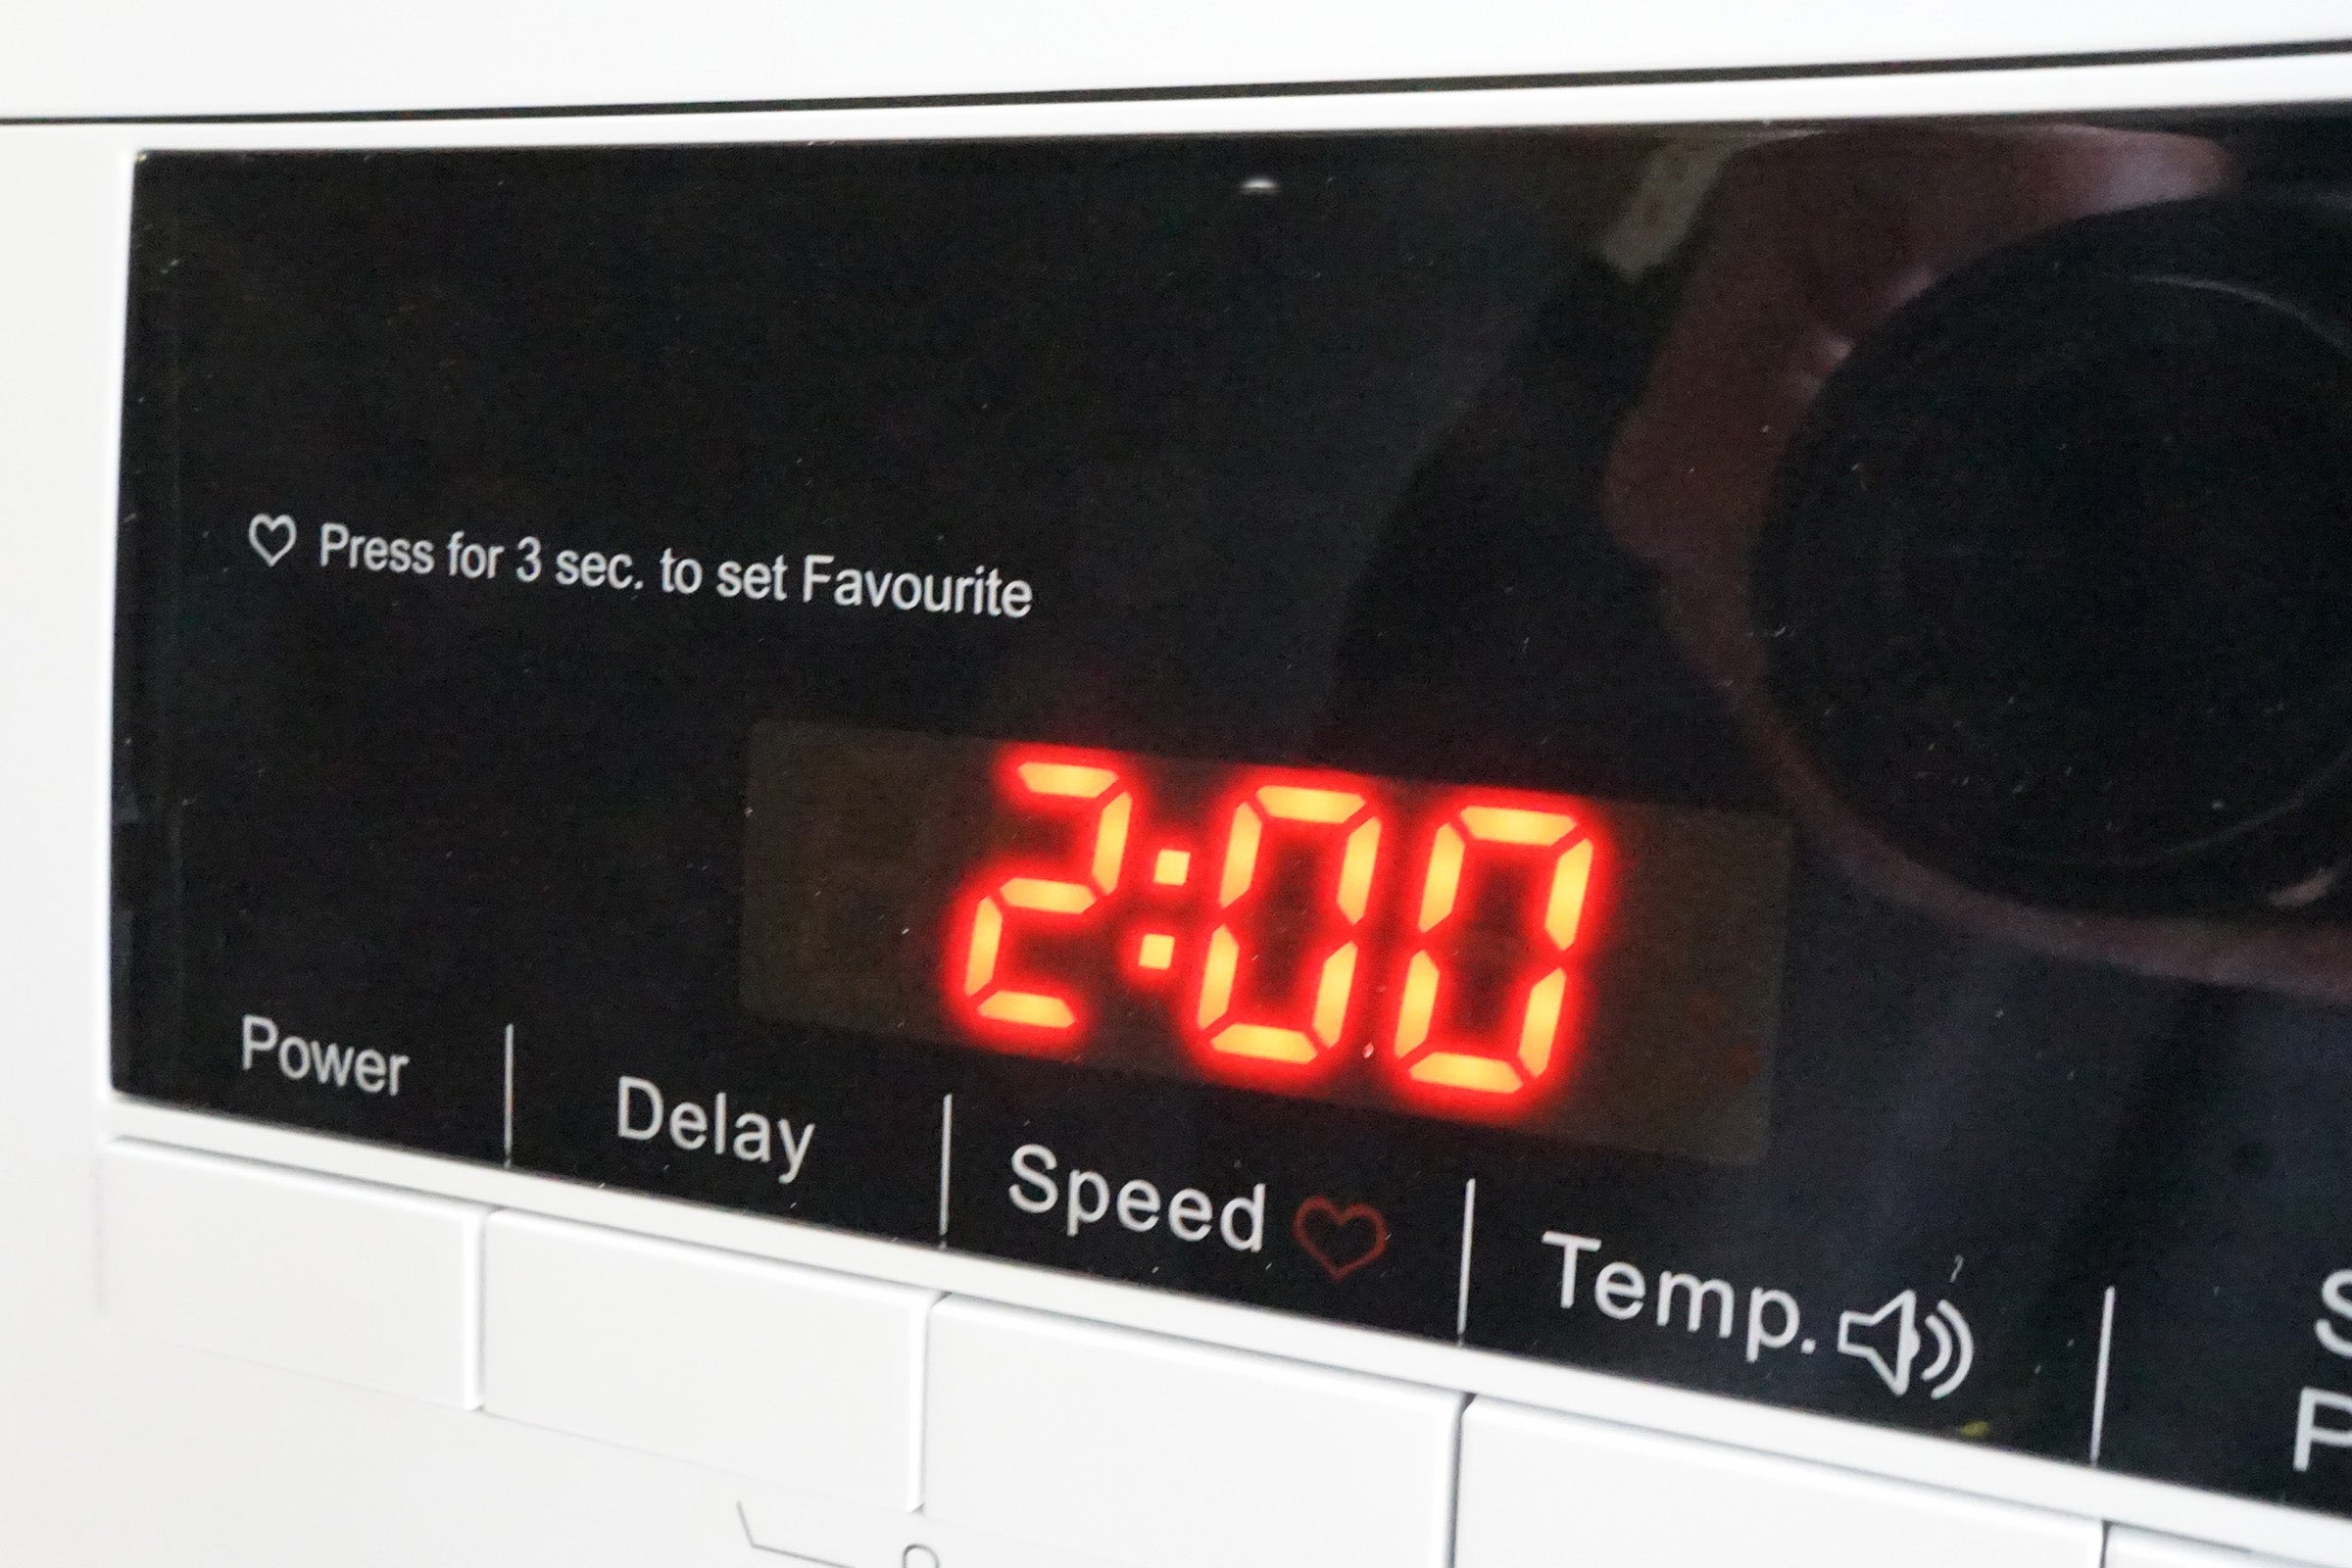 Display panel of Logik L814WM16 washing machine showing 2:00 wash time.